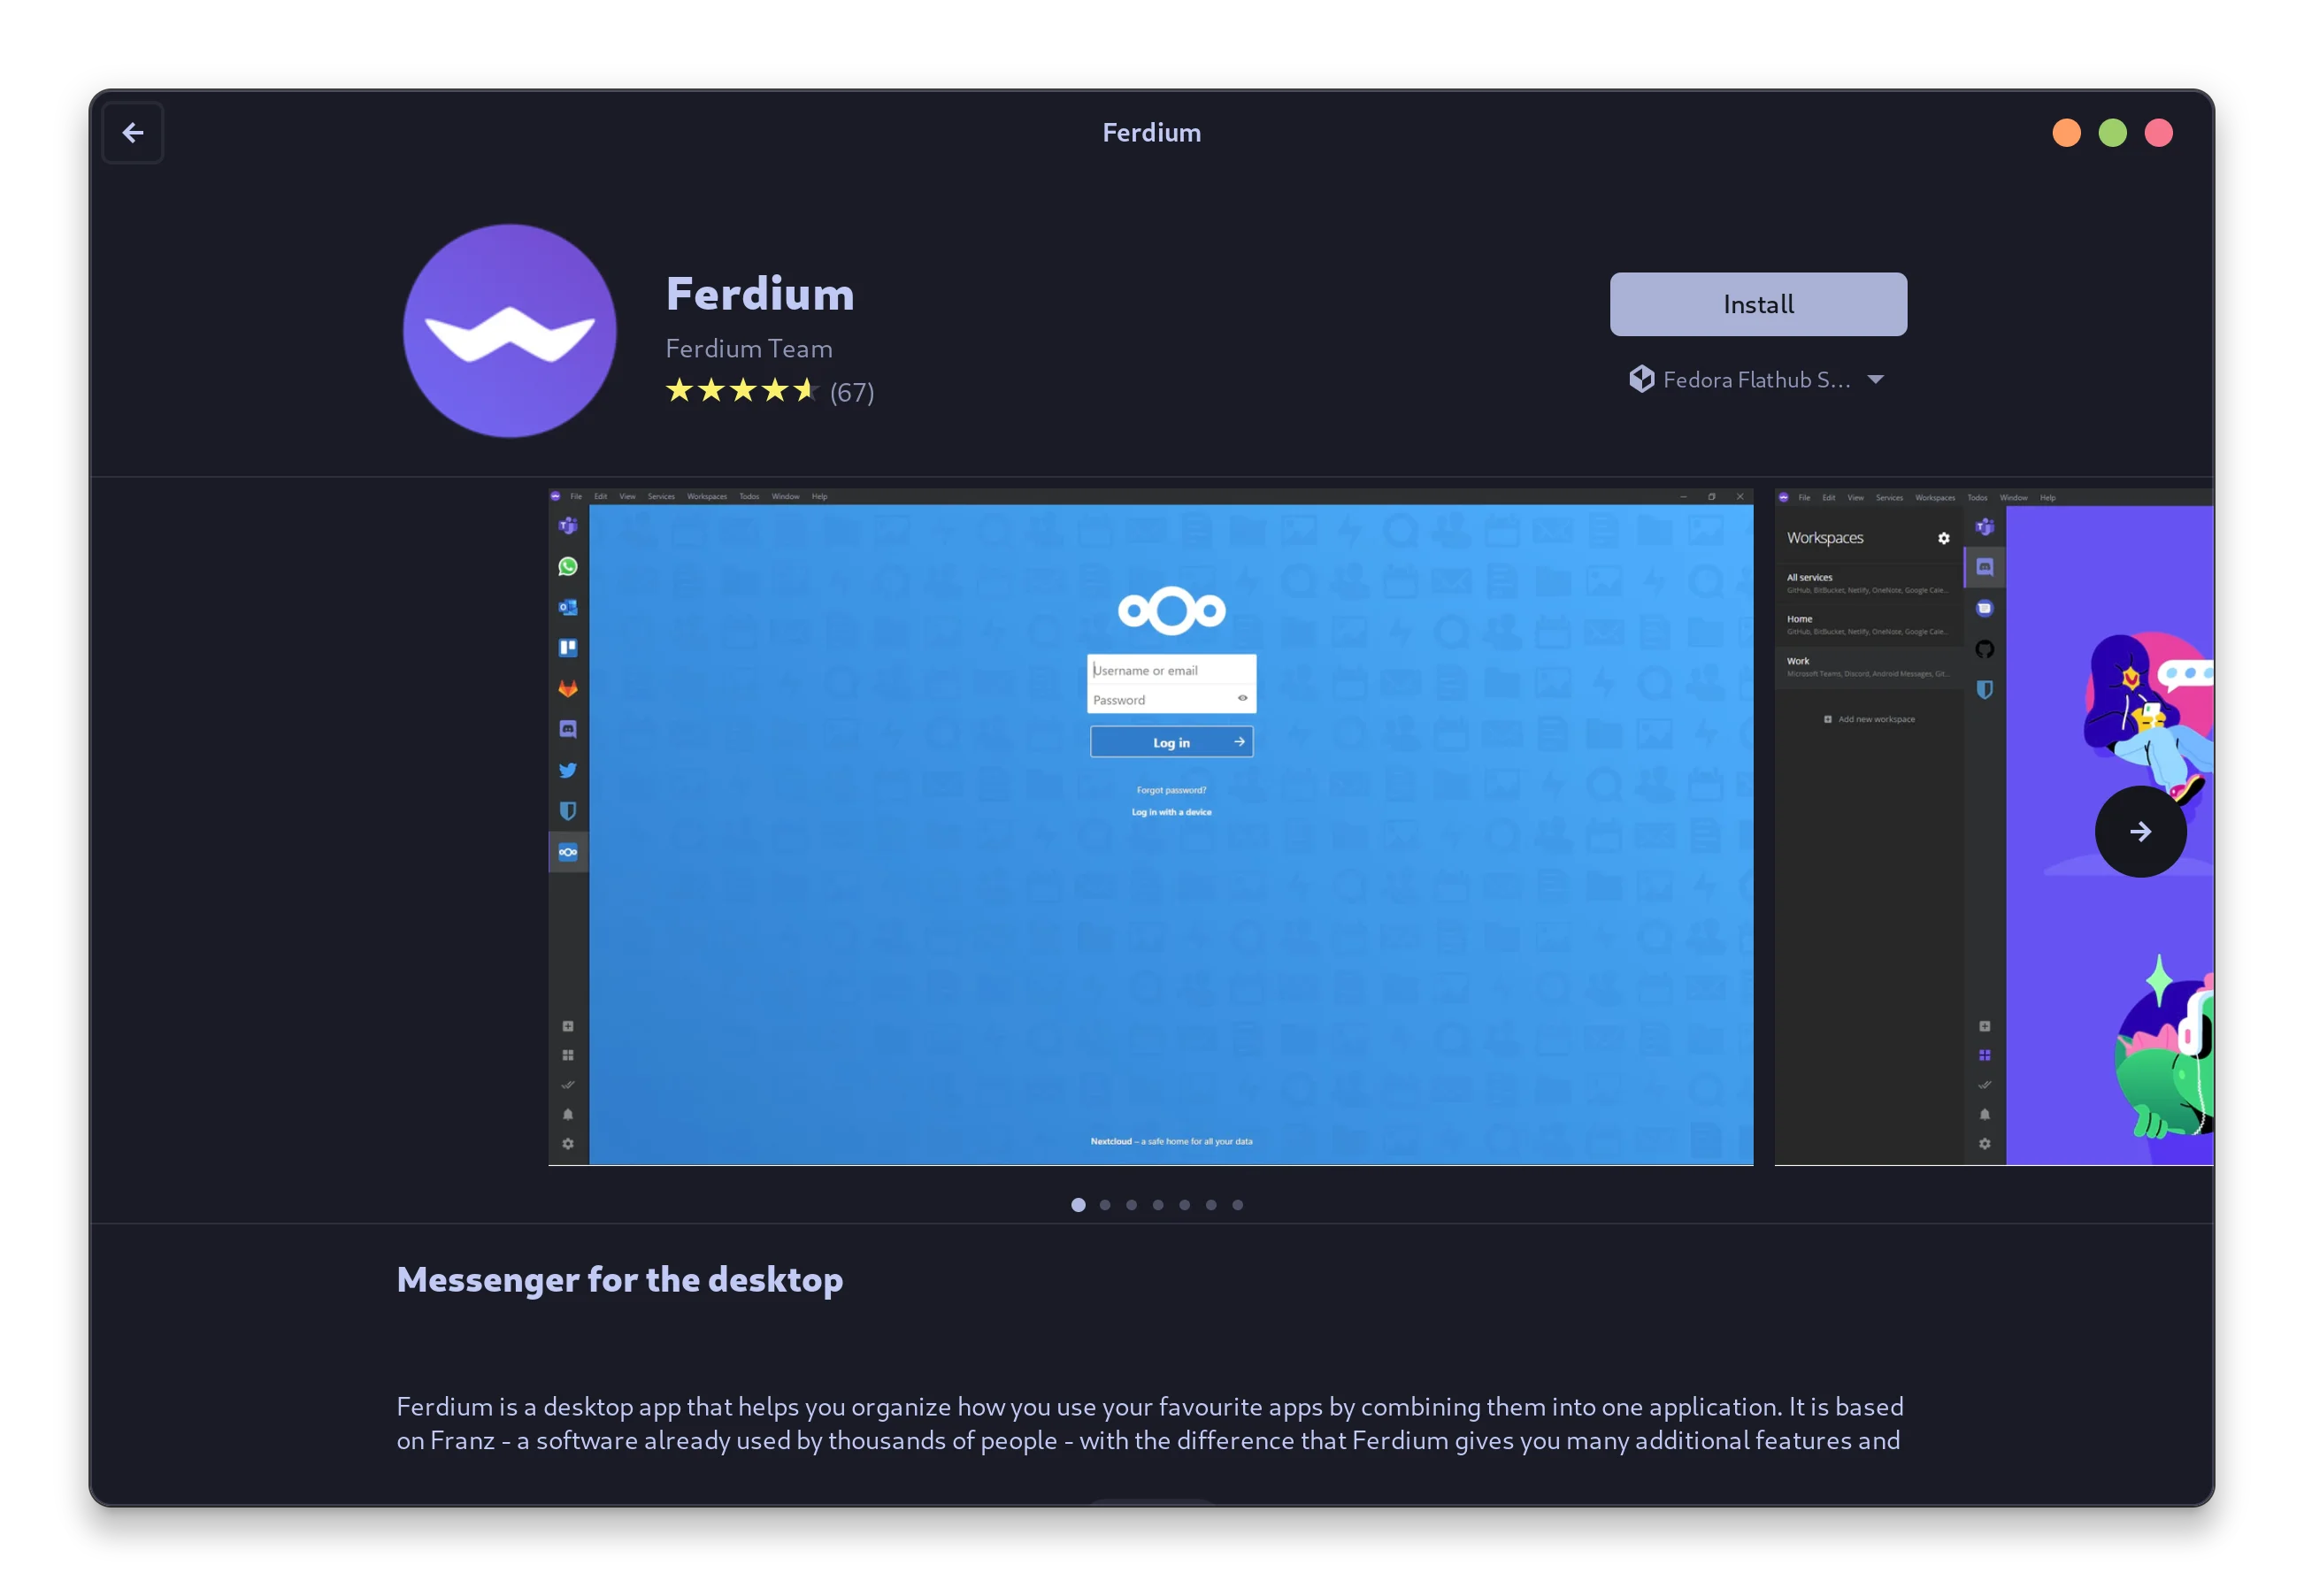 Installazione di Ferdium tramite GNOME Software Store